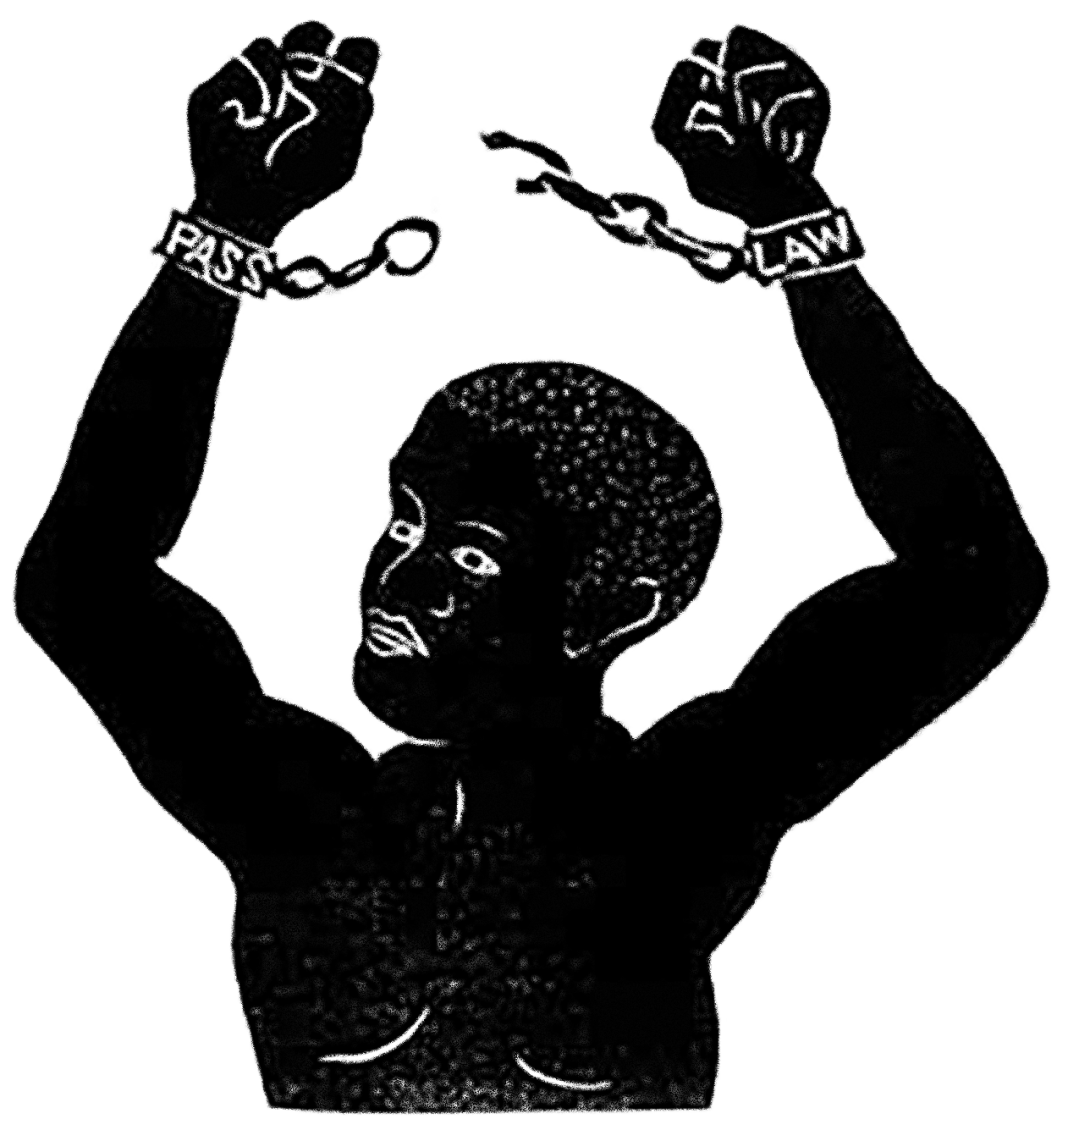 Linoleumsnitt av Eddie Roux, 1933, i protest mot ”passlagar” som begränsade svarta människors rörelsefrihet i Sydafrika, till och med före apartheid.